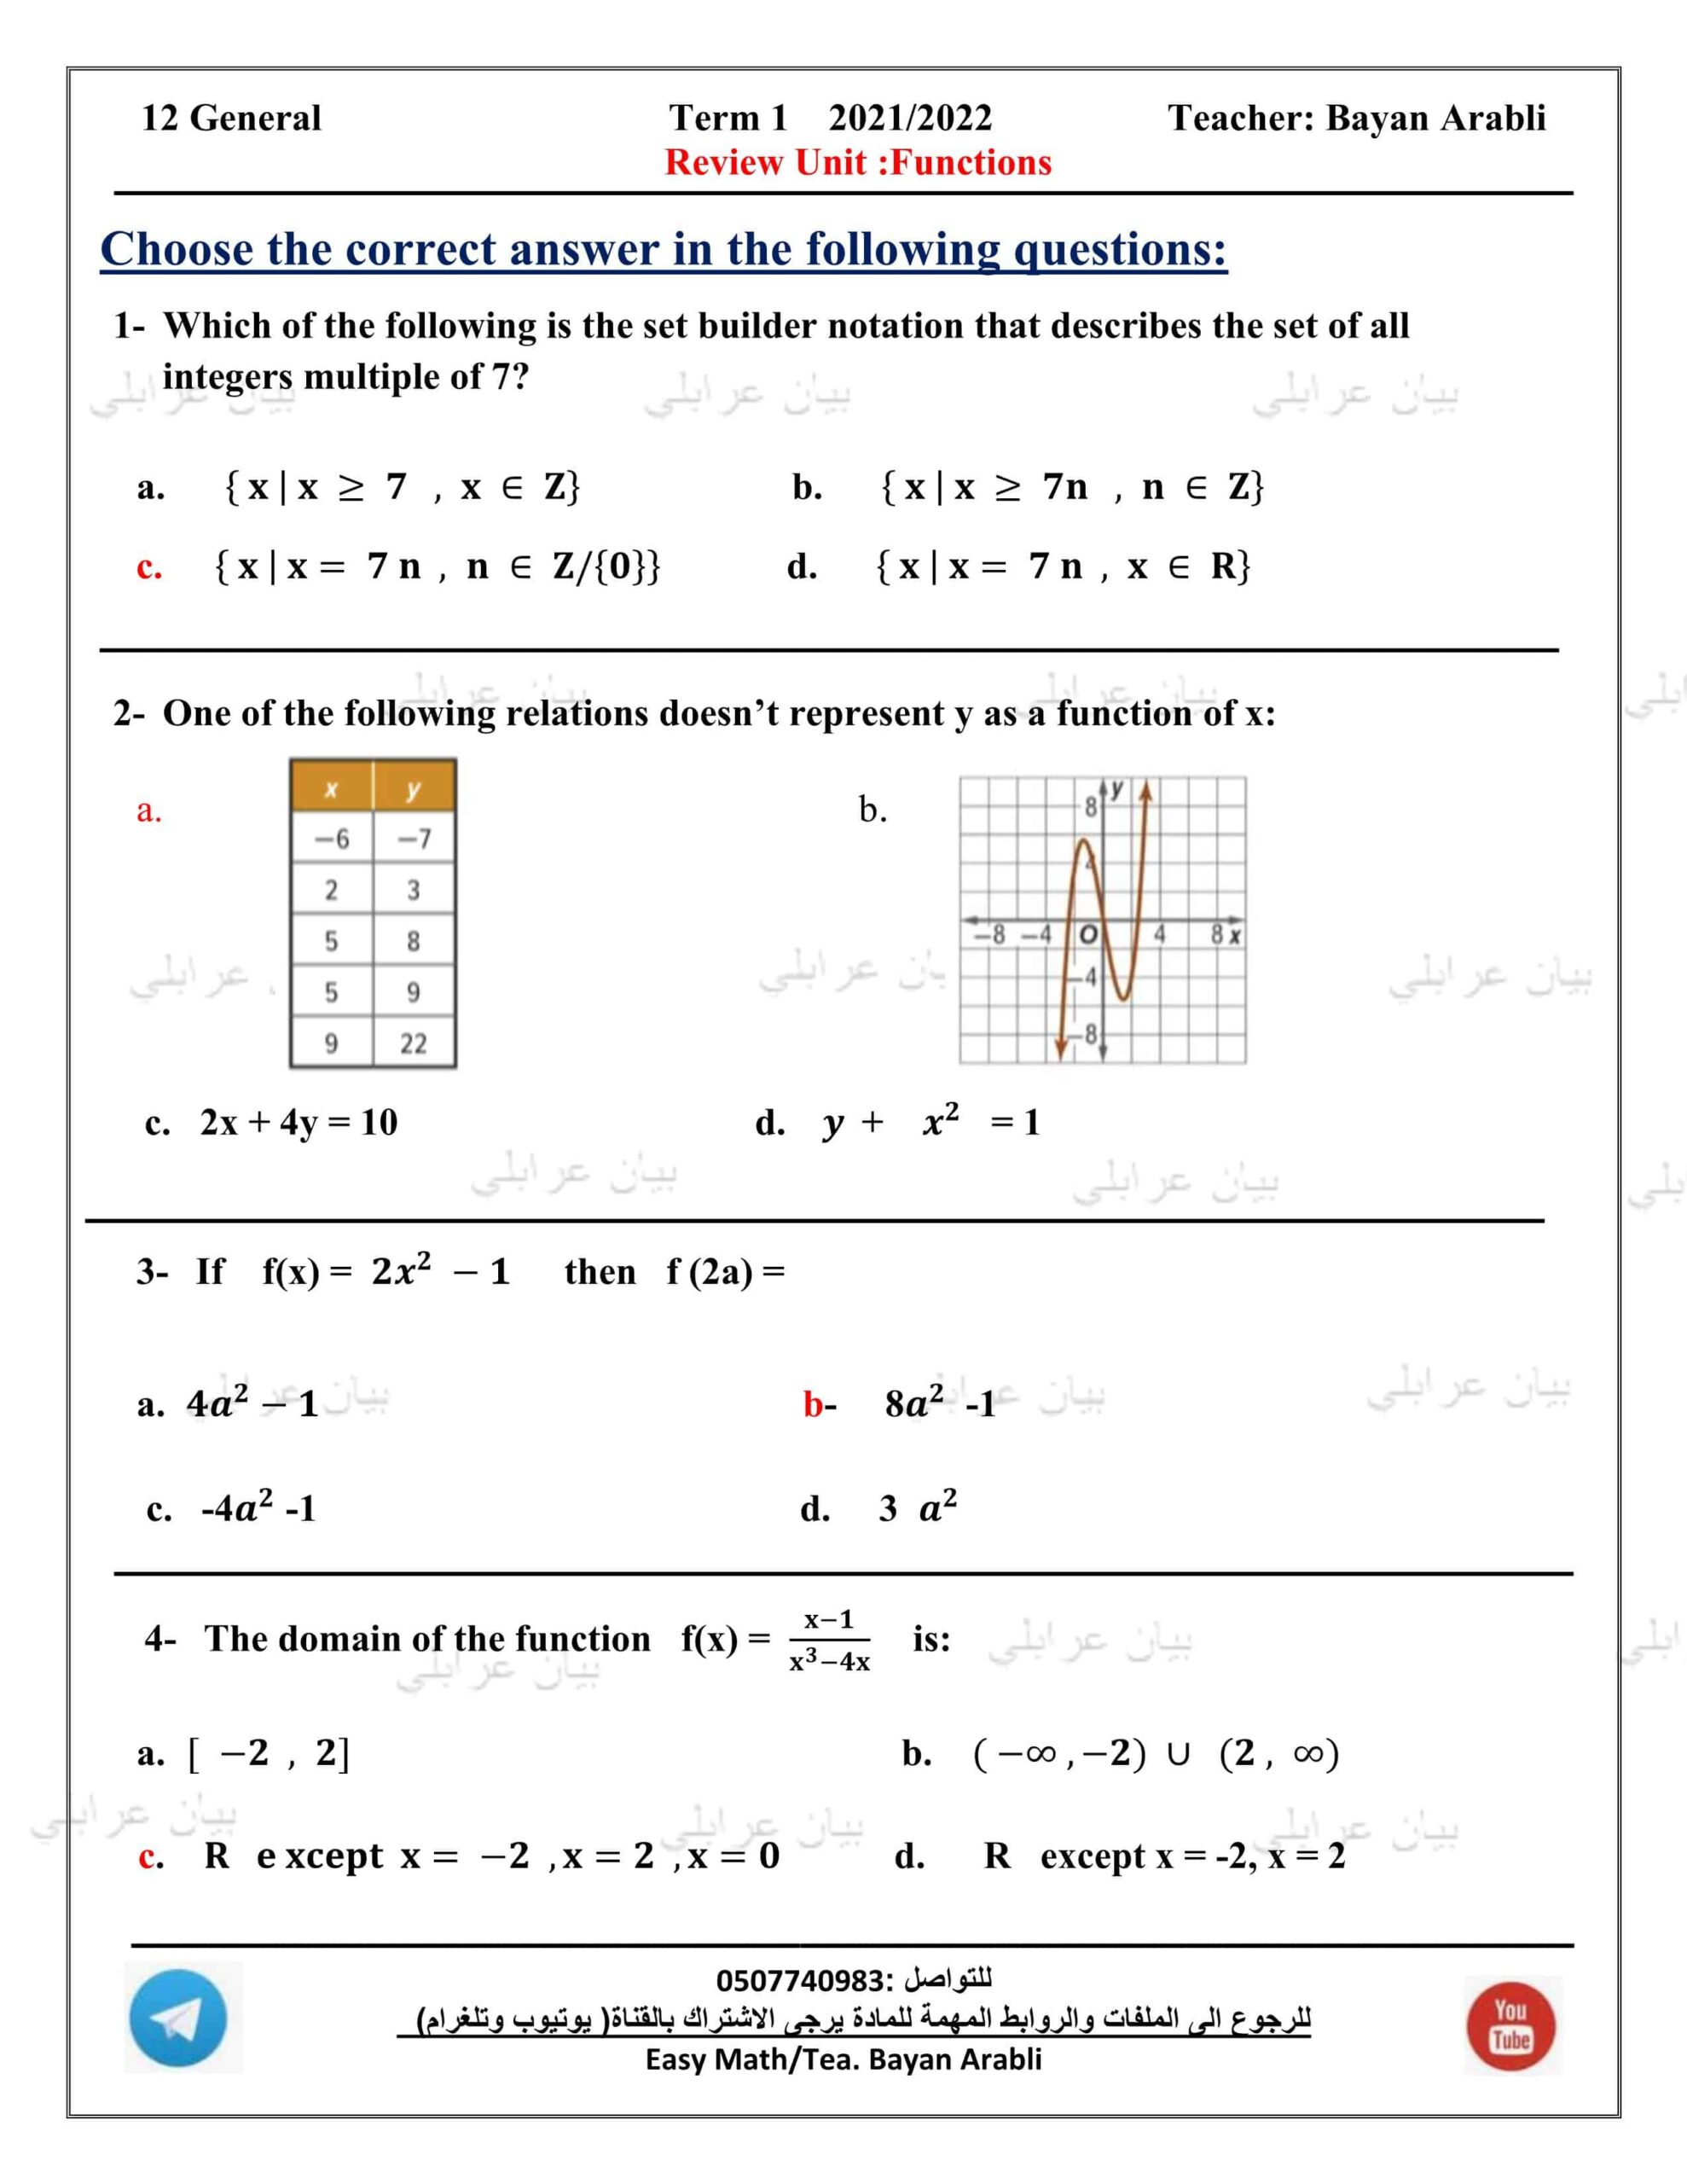 أوراق عمل Review Unit Functions الرياضيات المتكاملة الصف الثاني عشر عام